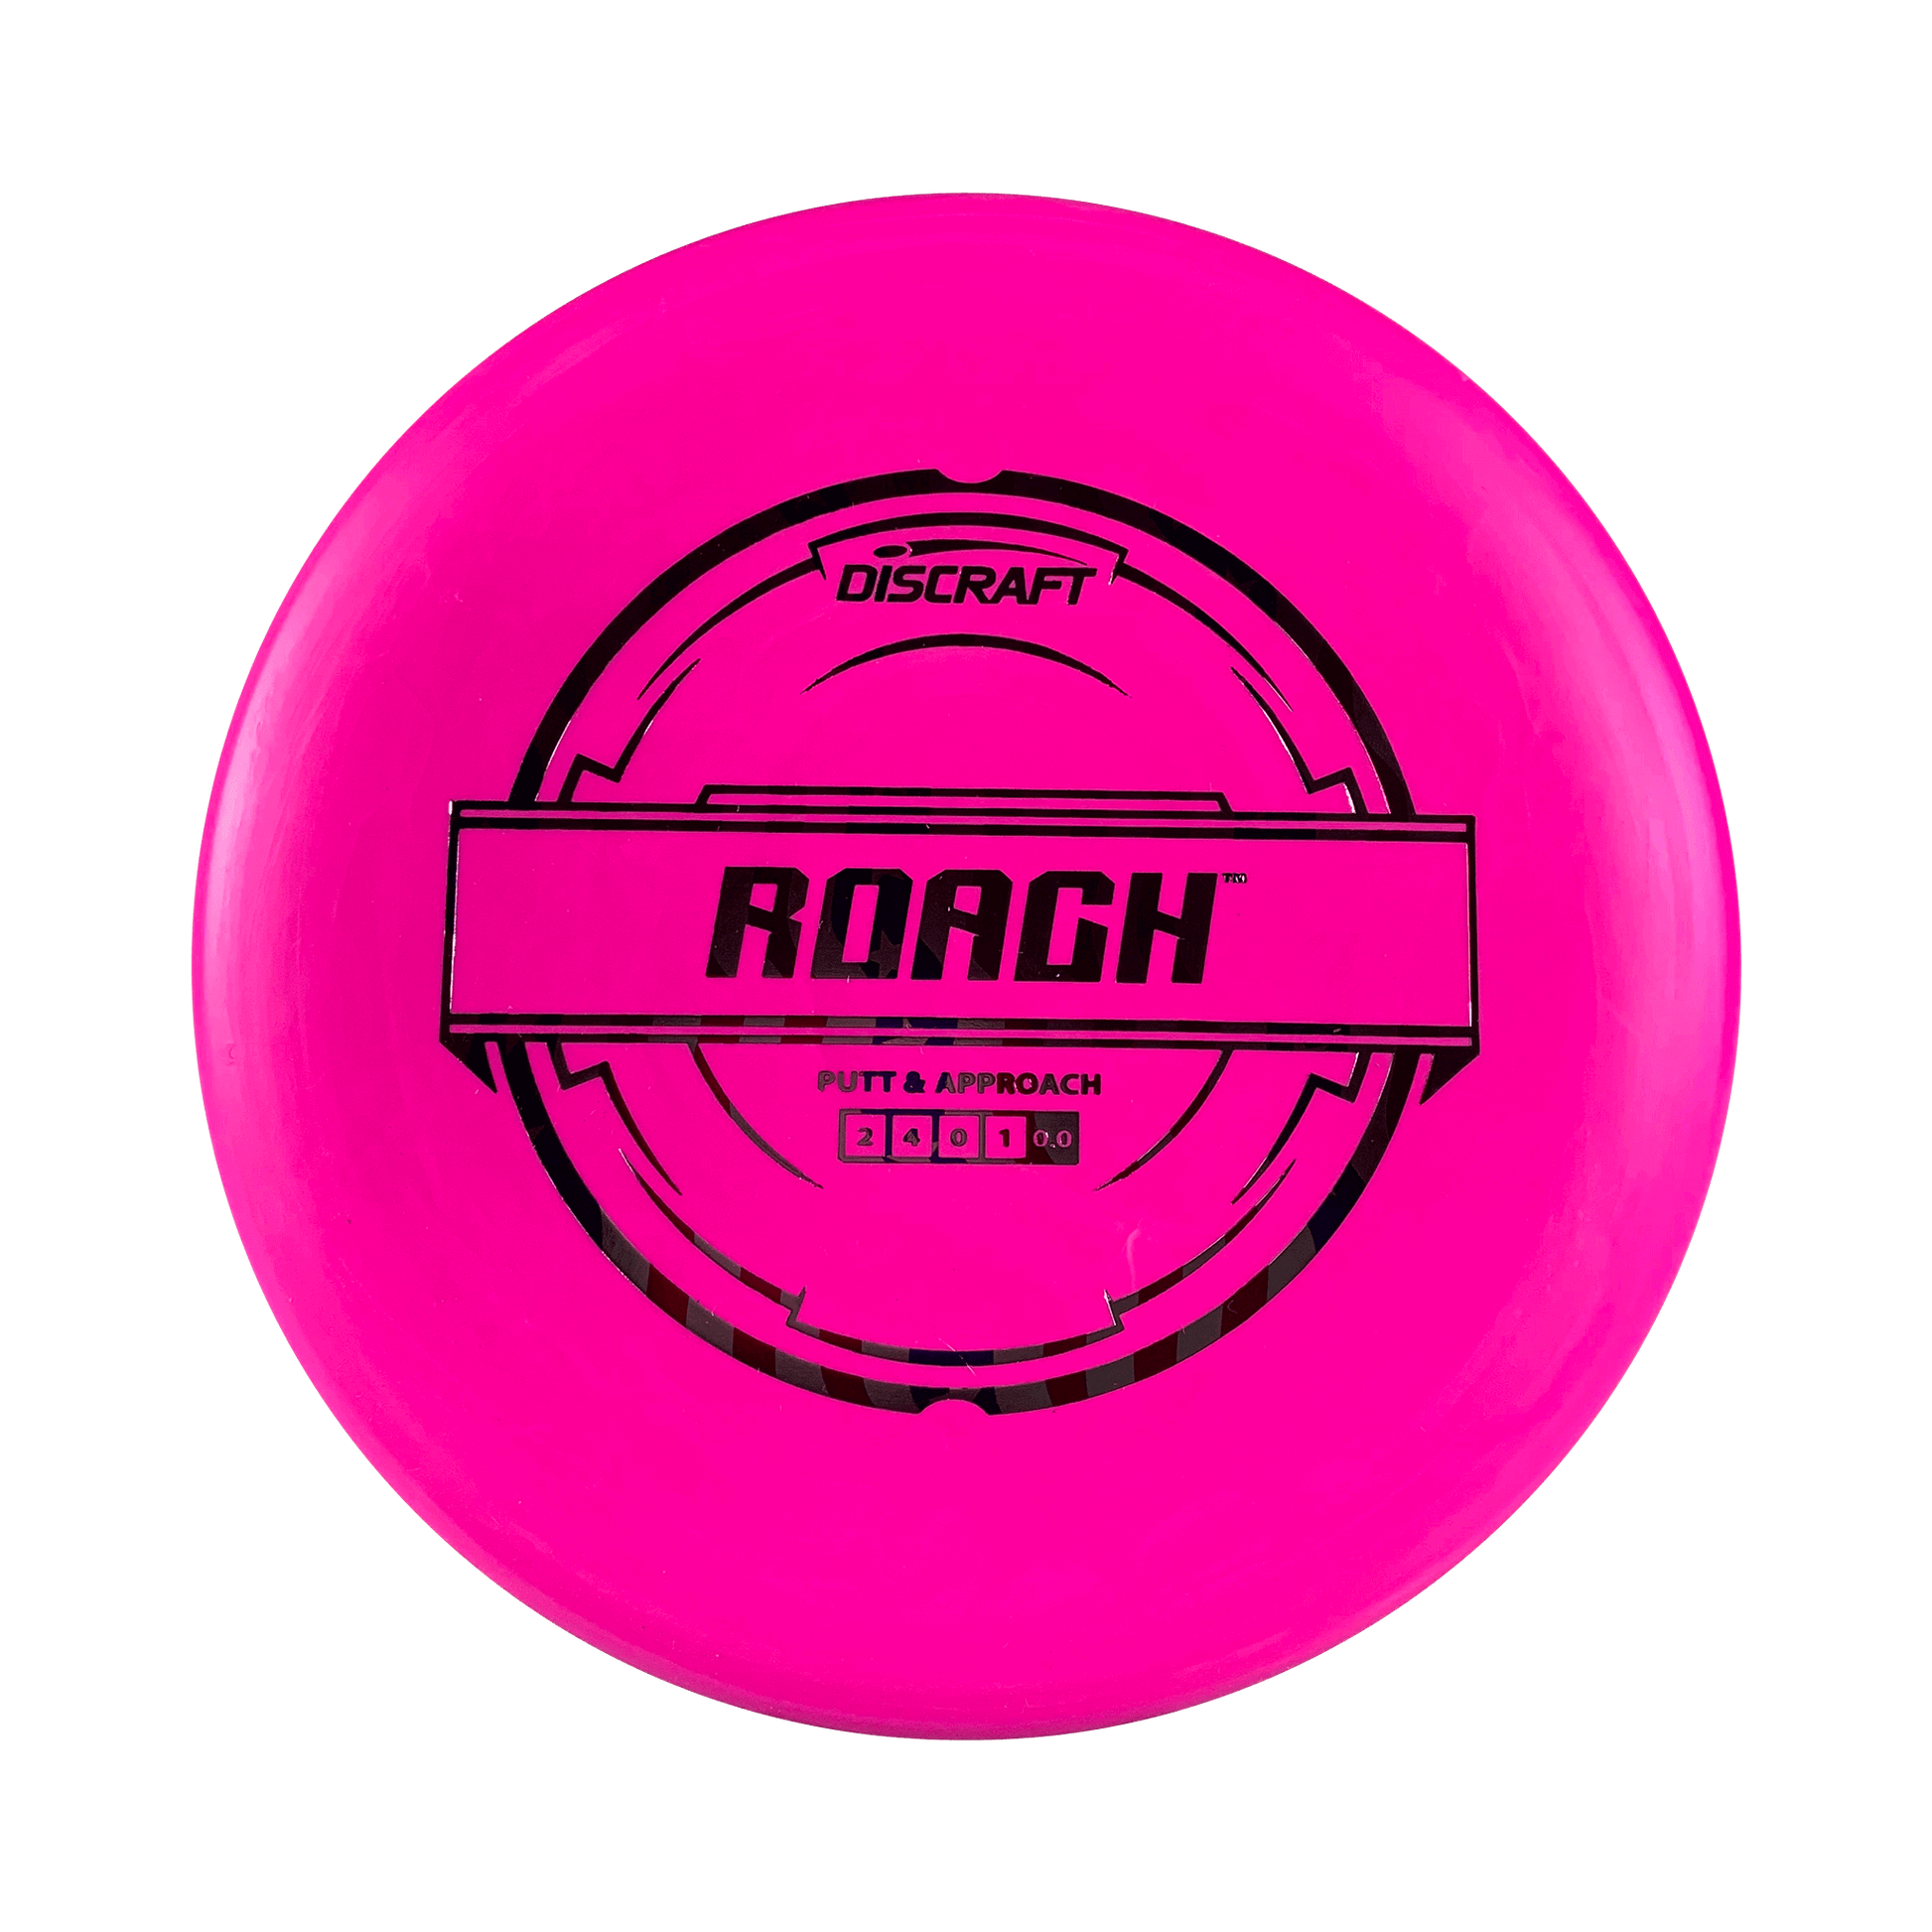 Pro D Roach Disc Discraft hot pink 173 